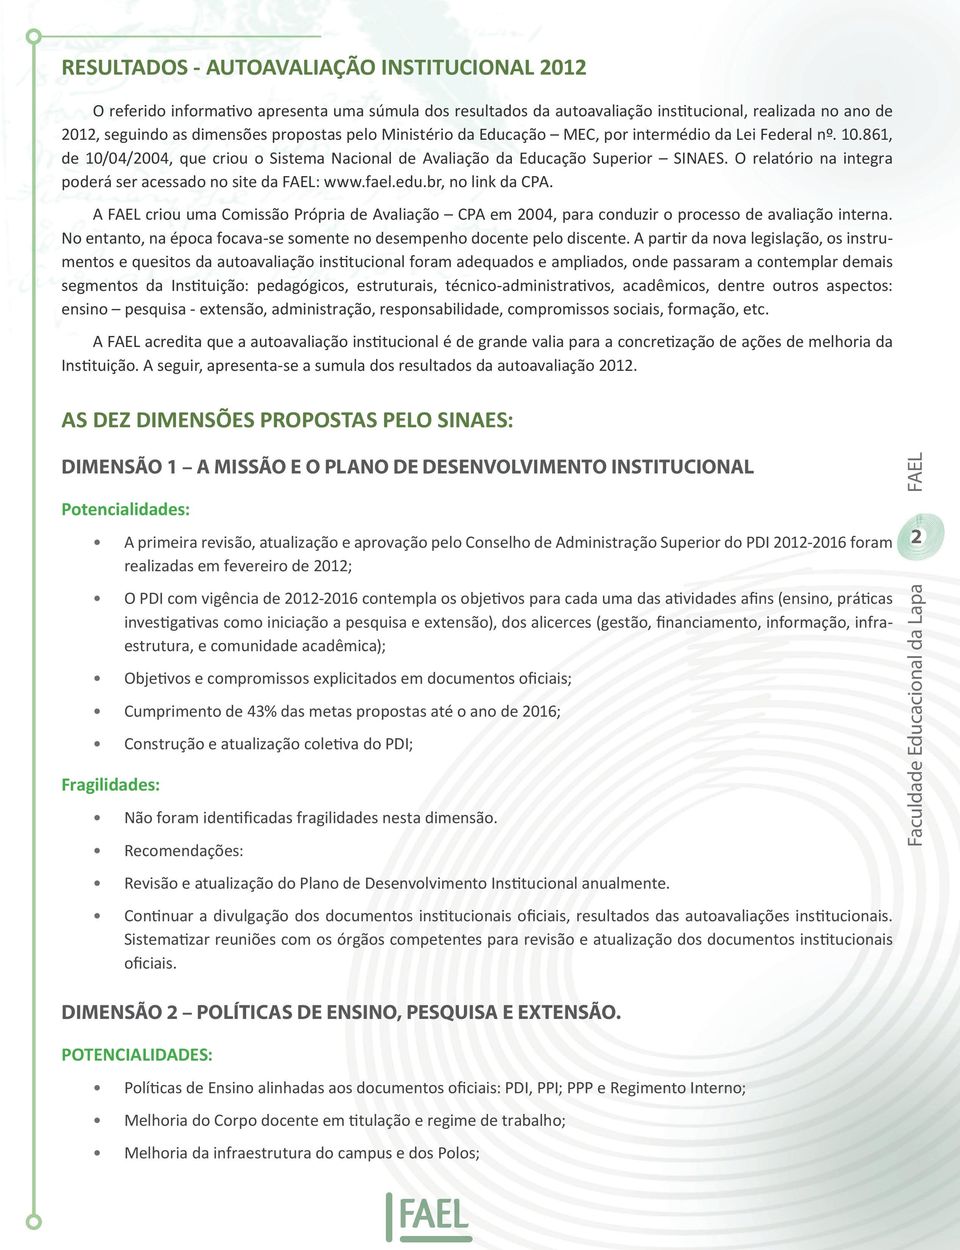 O relatório na integra poderá ser acessado no site da FAEL: www.fael.edu.br, no link da CPA. A FAEL criou uma Comissão Própria de Avaliação CPA em 2004, para conduzir o processo de avaliação interna.